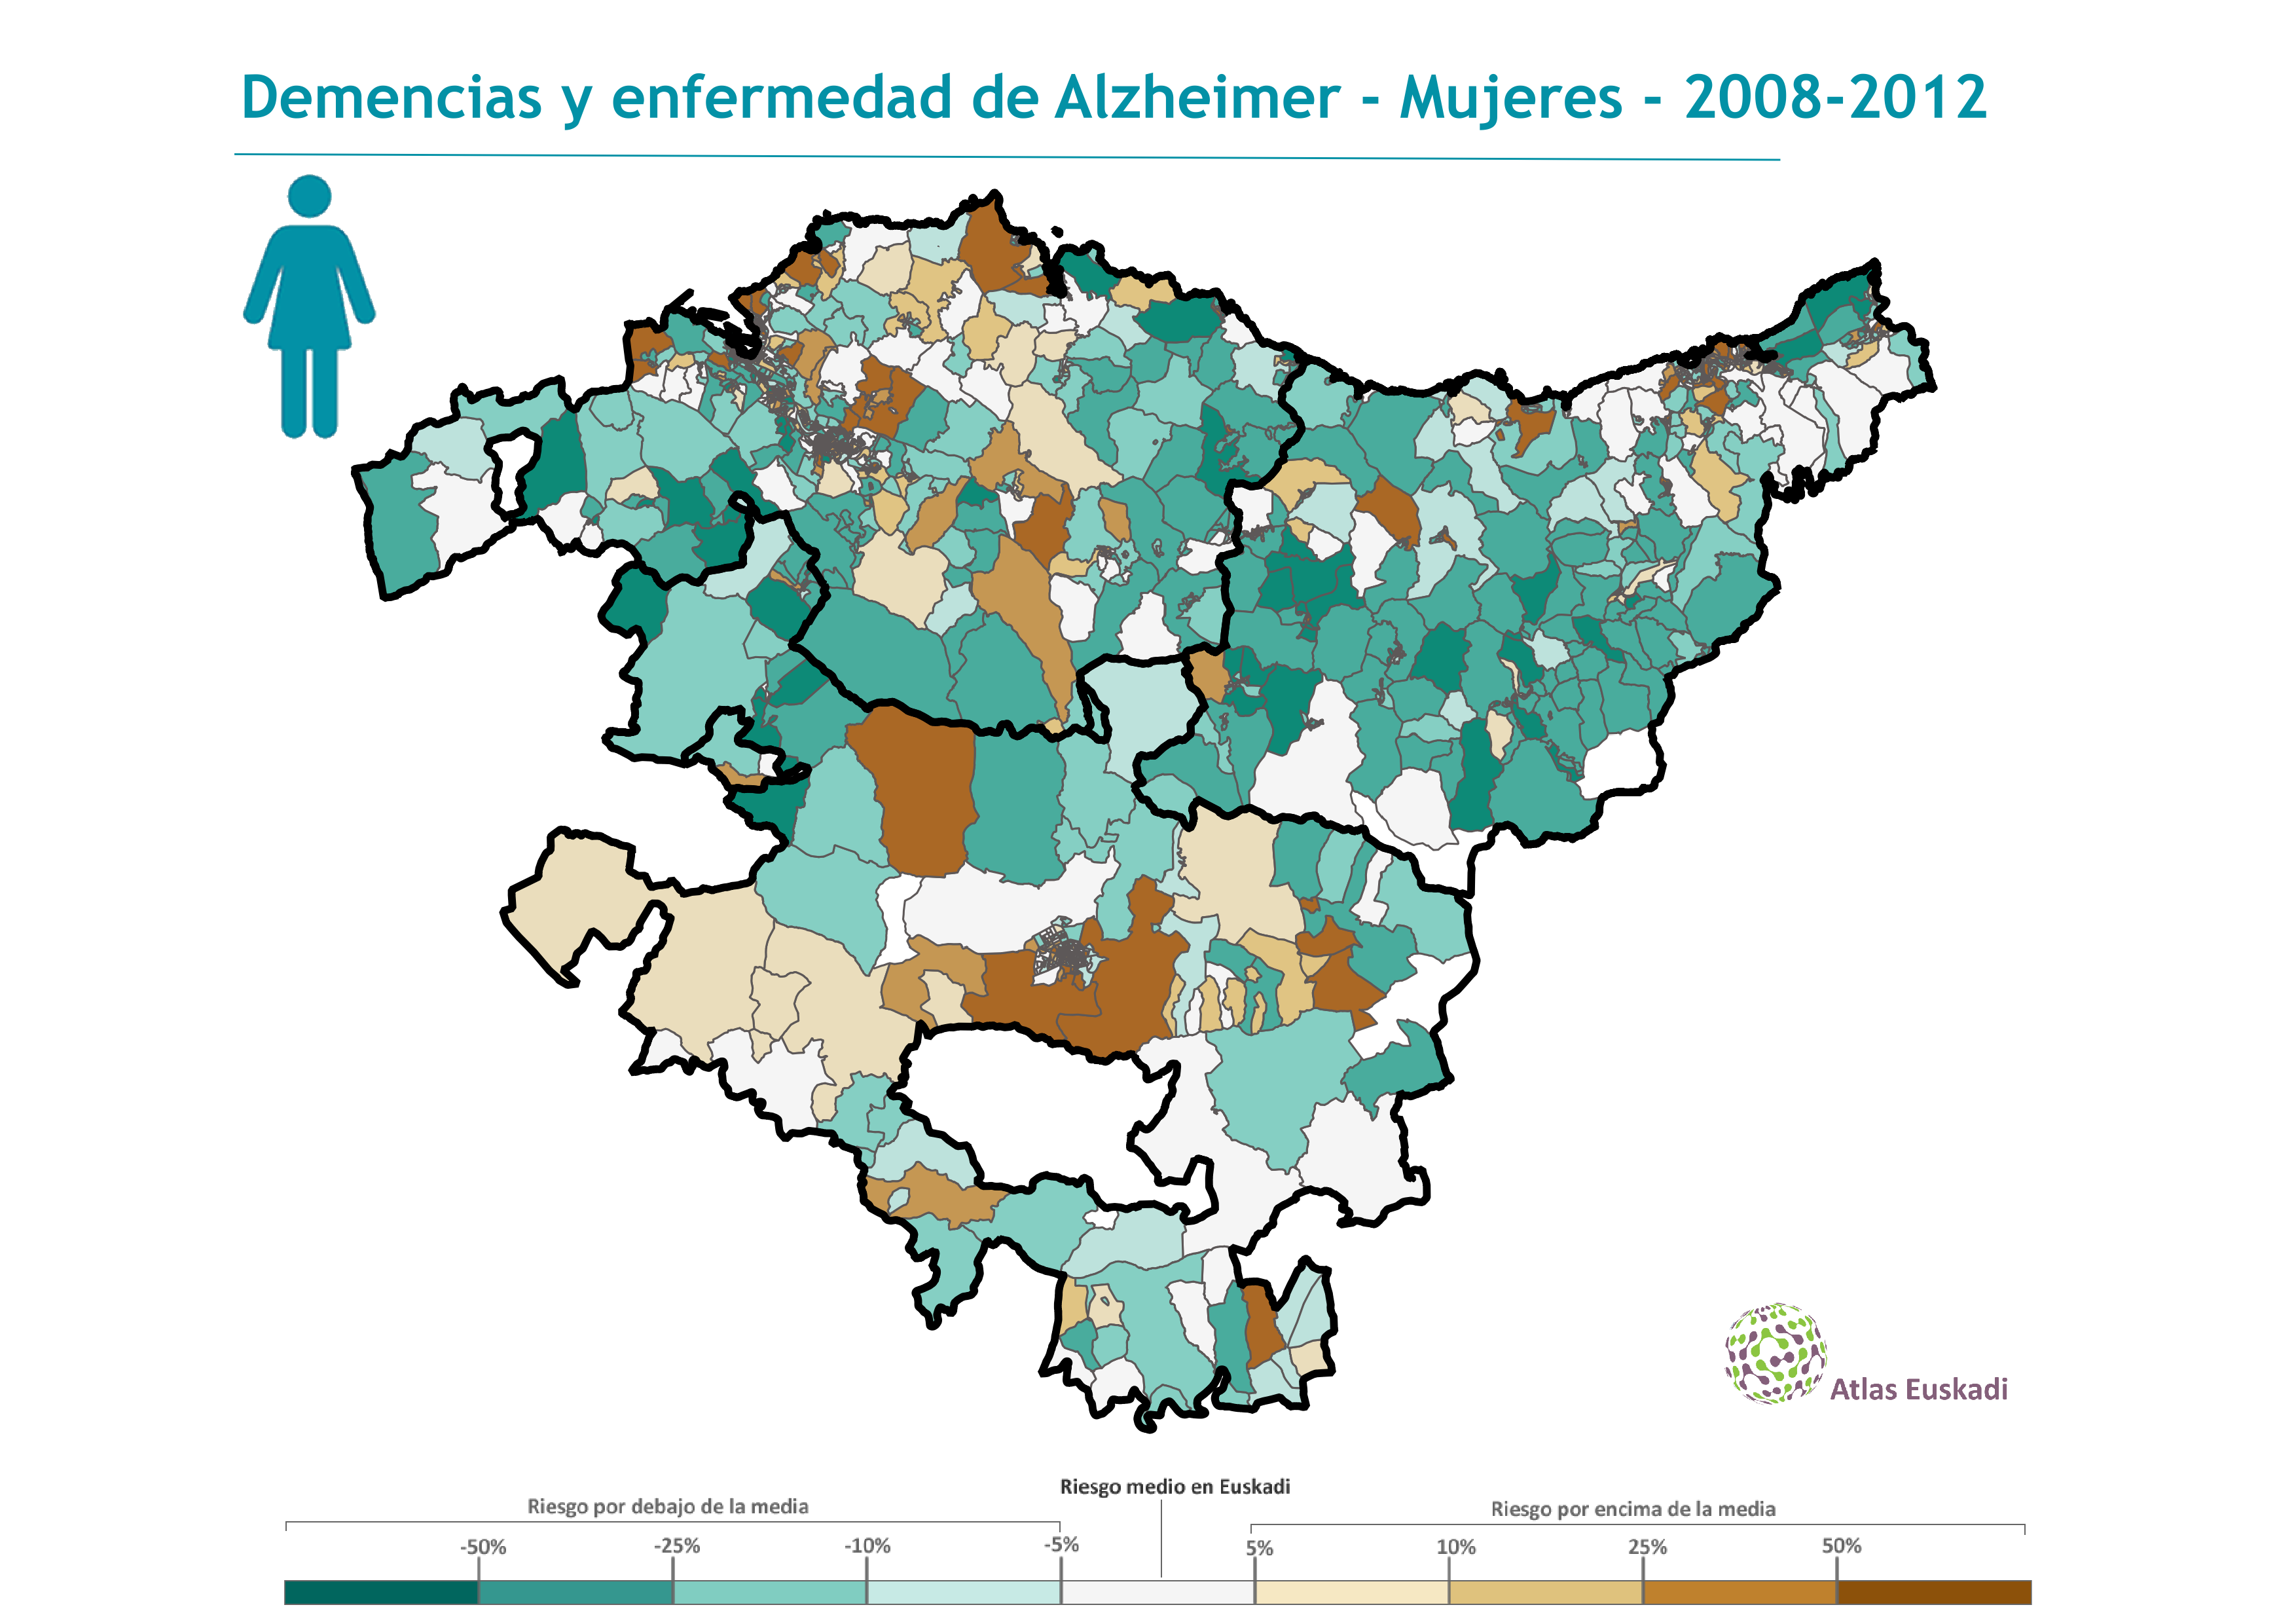 Demencias y enfermedad de Alzheimer mujeres  2008-2012 Euskadi